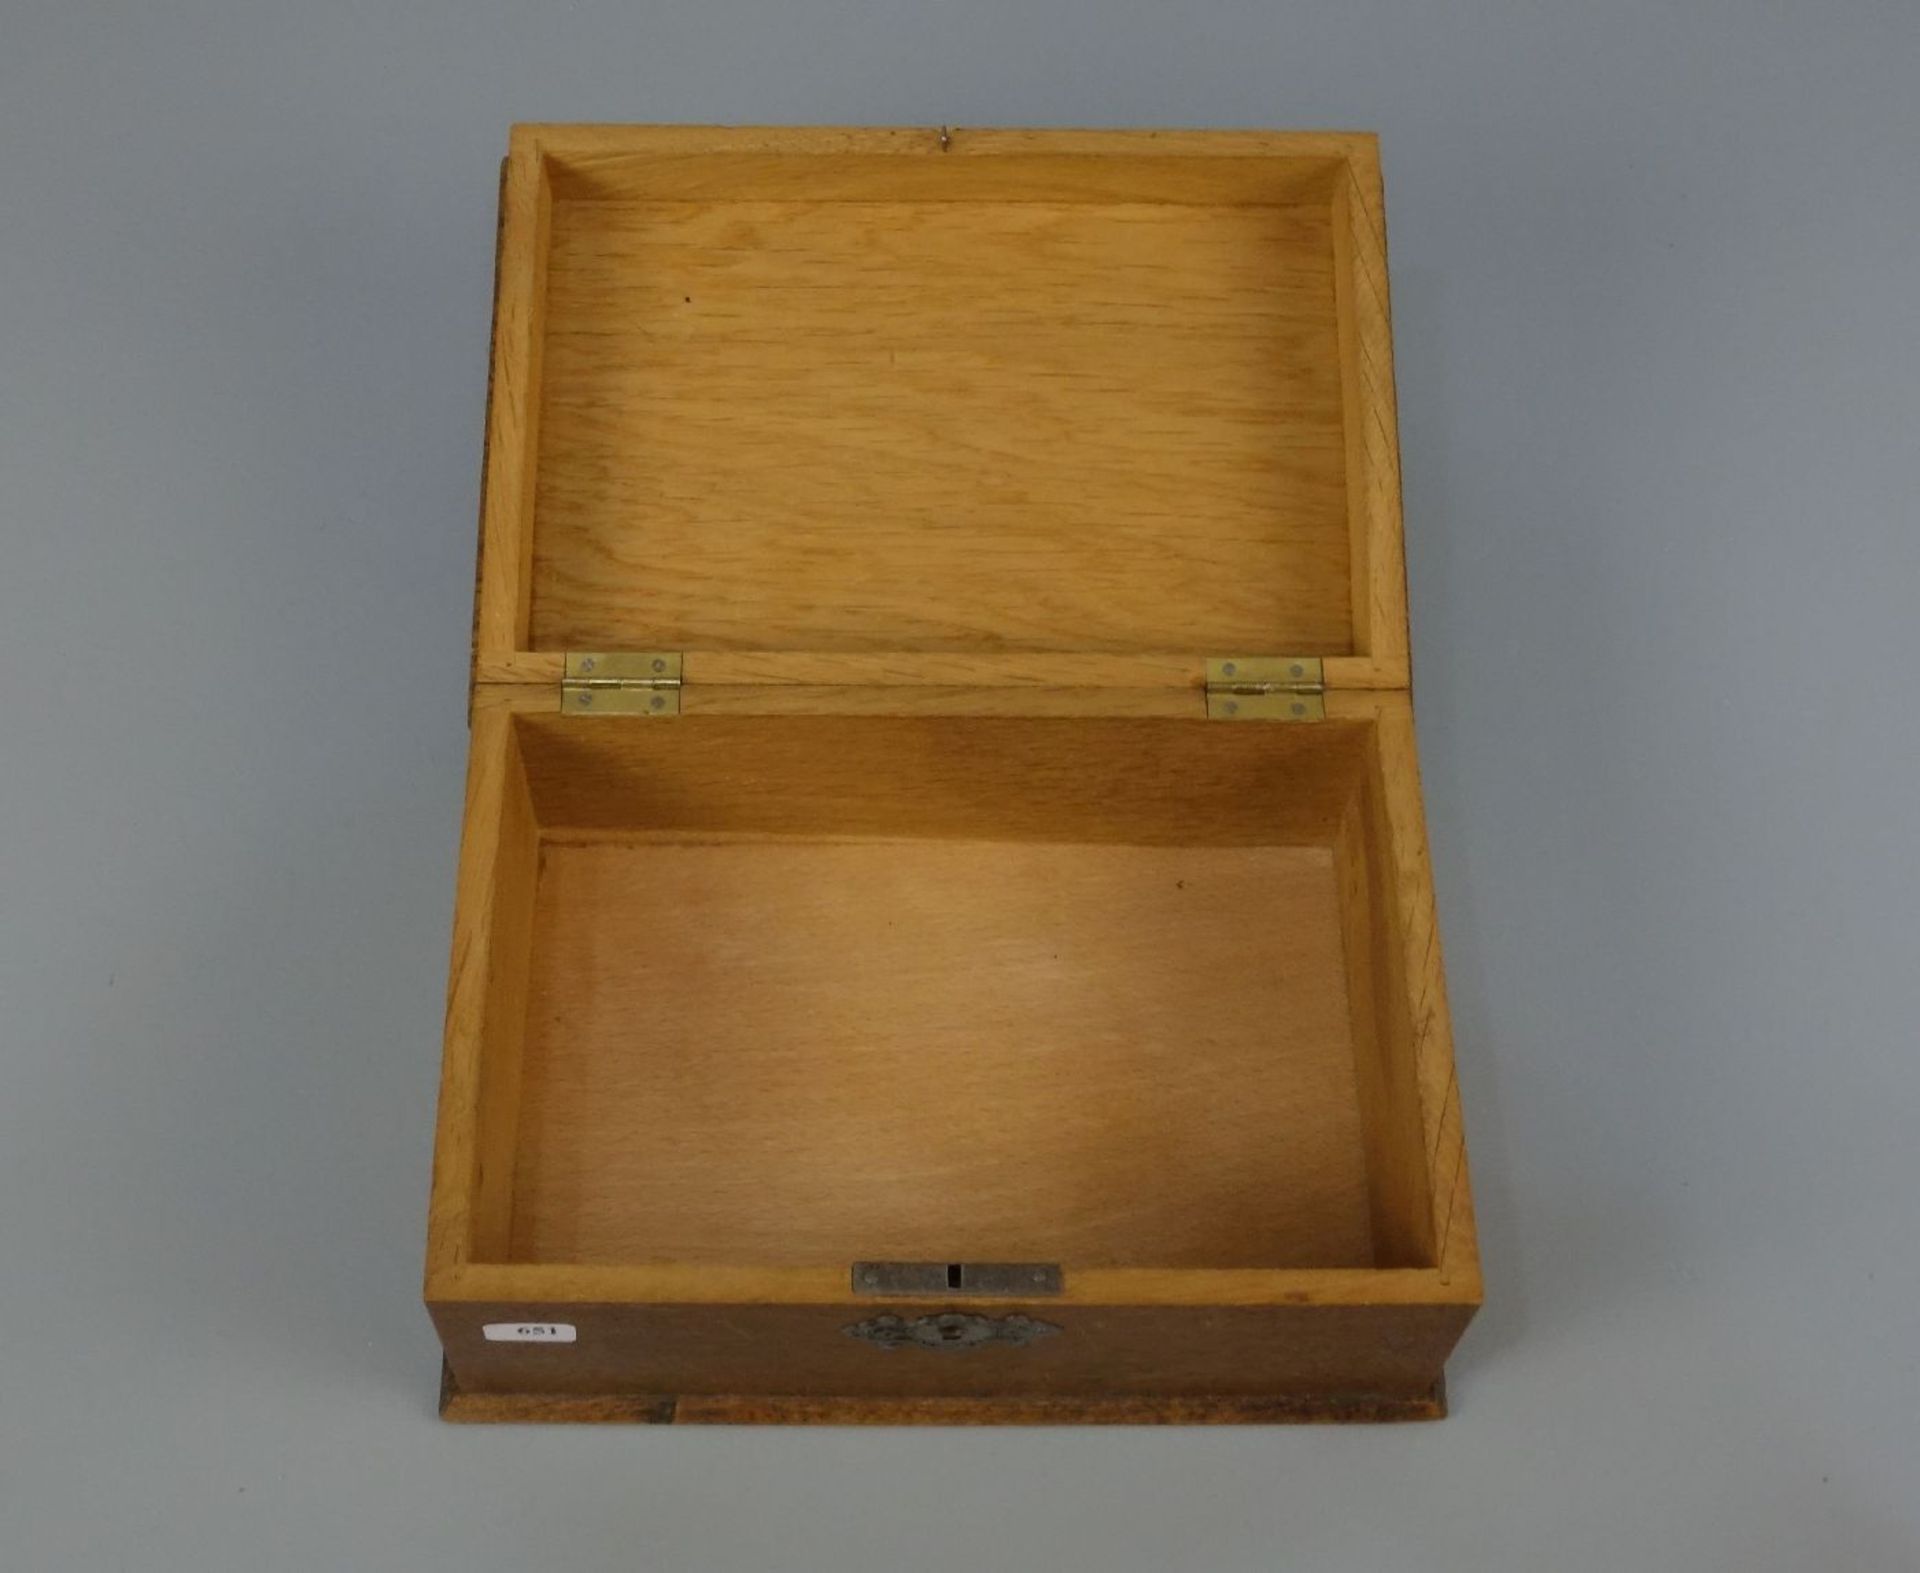 SCHATULLE mit versilberten Monturen / box, Buchenholz, Anfang 20. Jh.; Quaderform auf profiliertem - Image 2 of 3